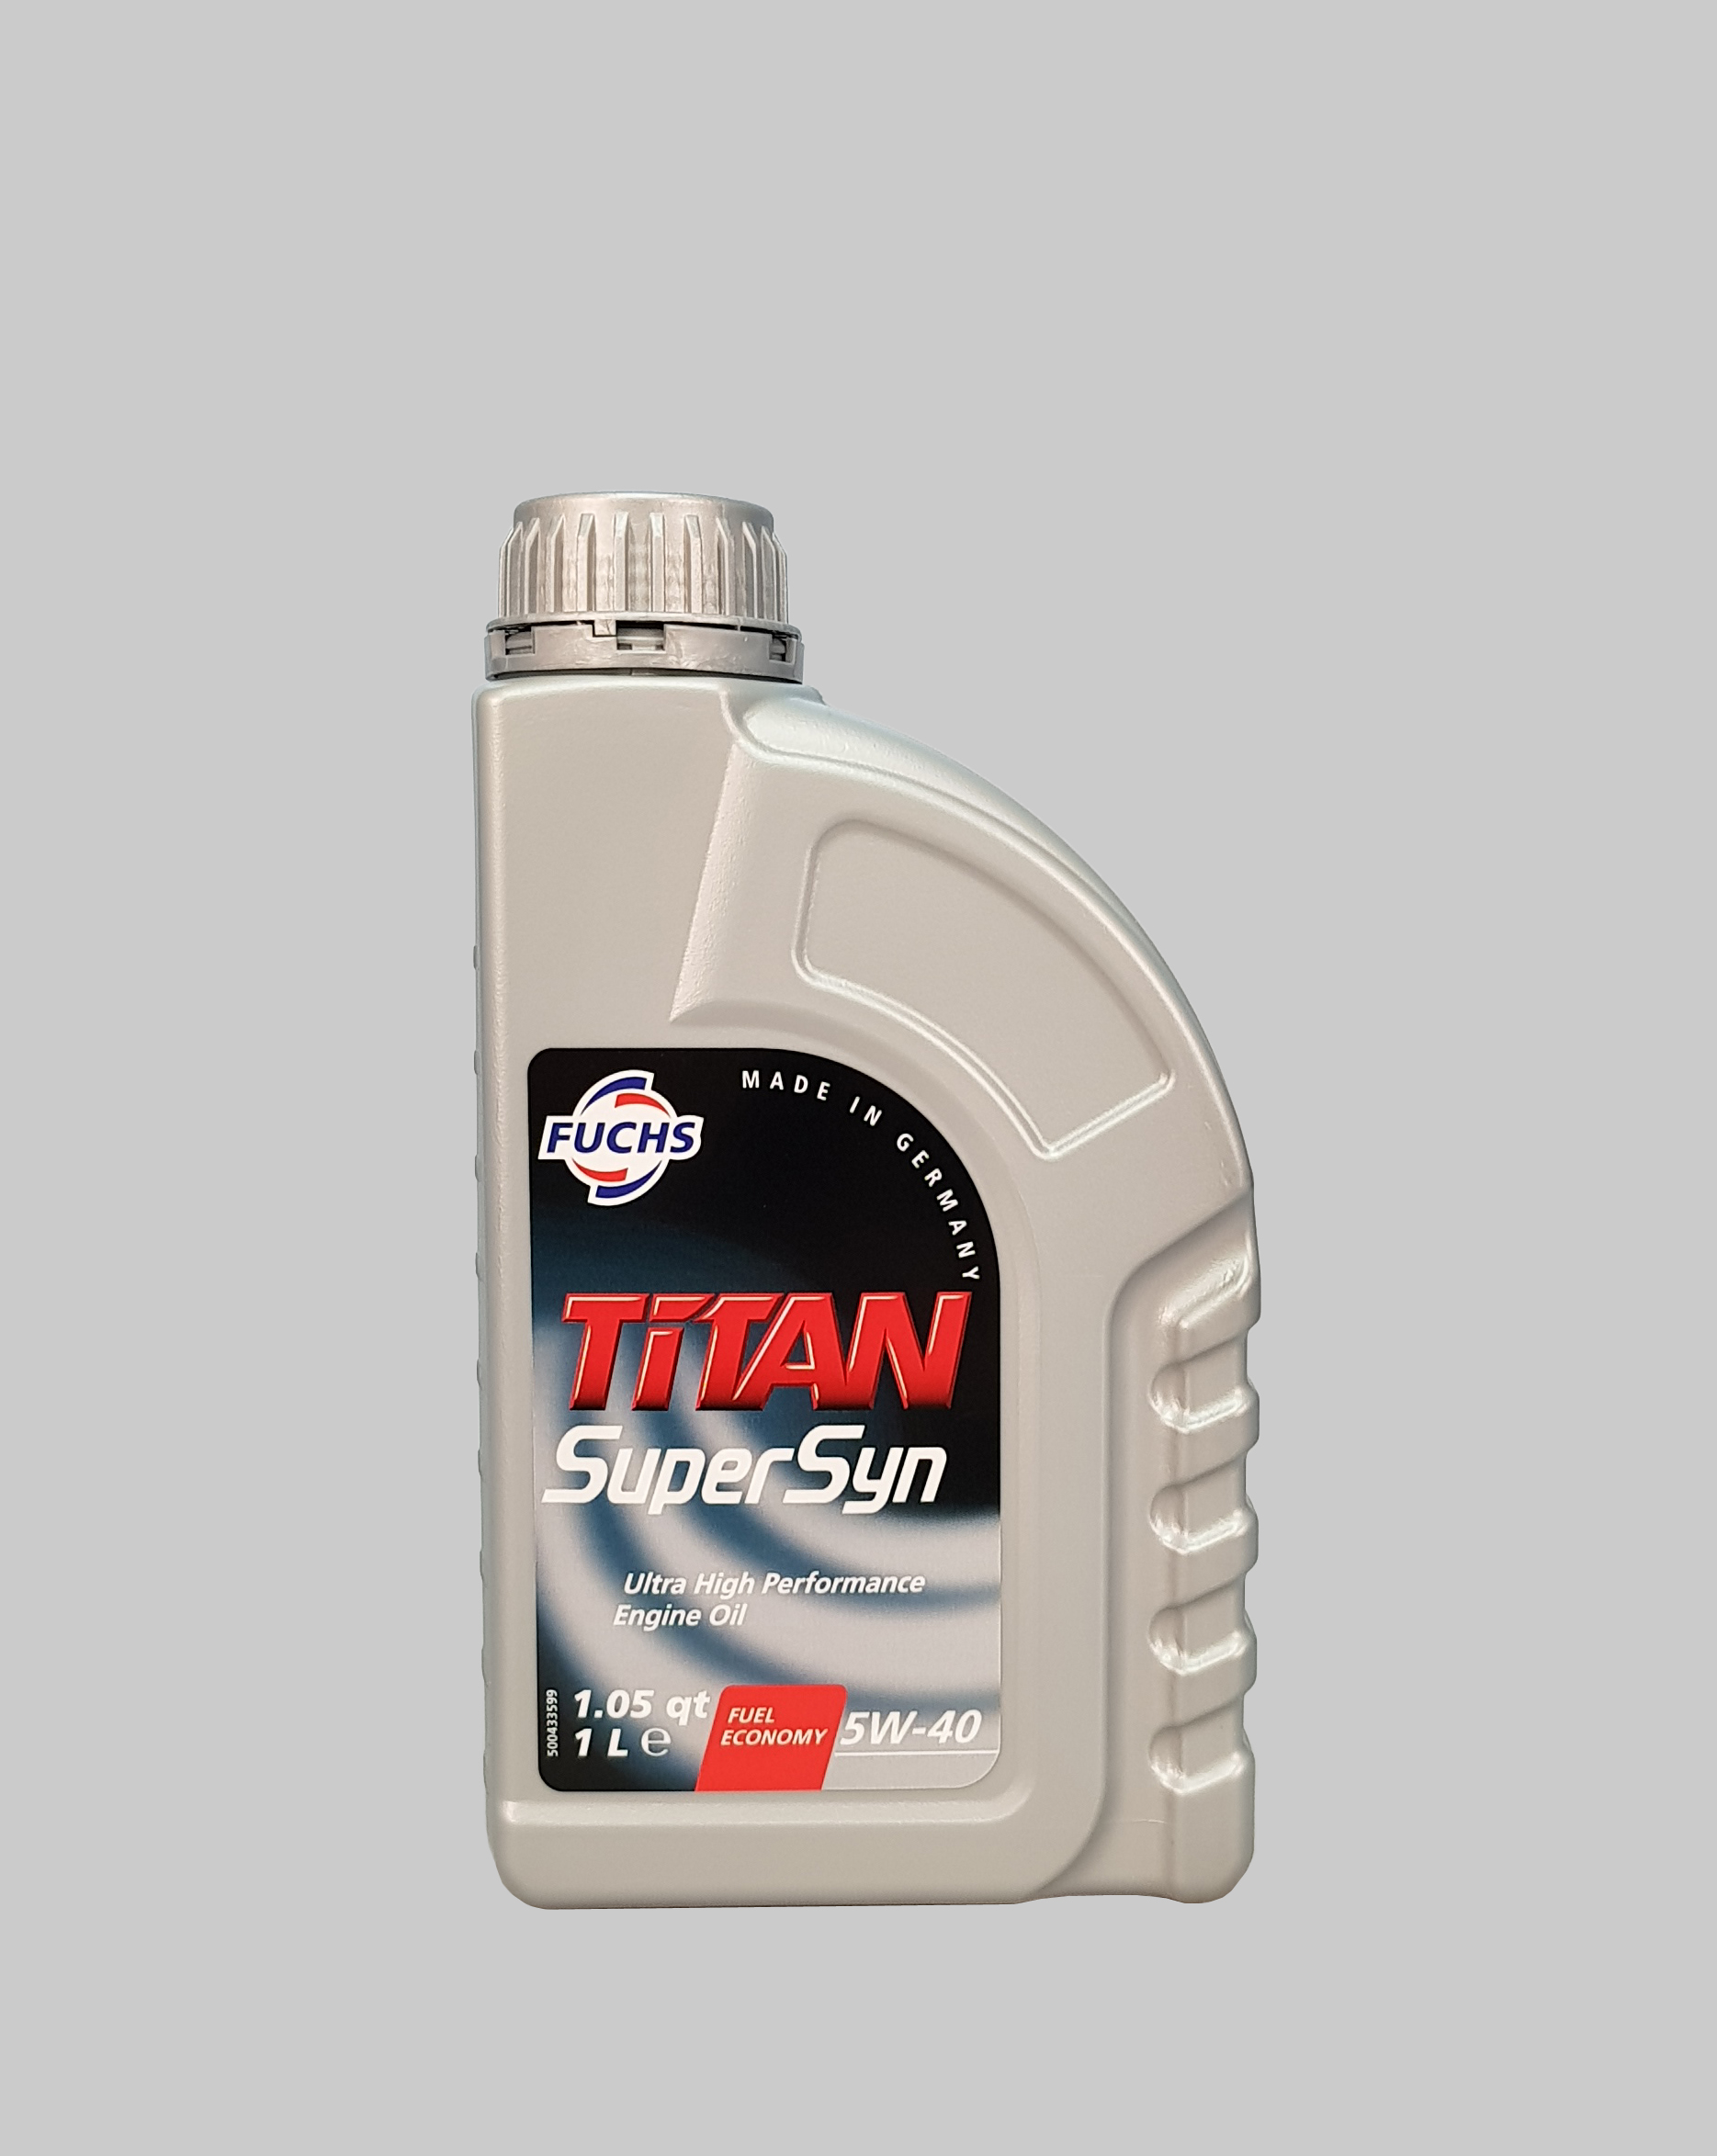 Fuchs Titan Supersyn 5W-40 1 Liter